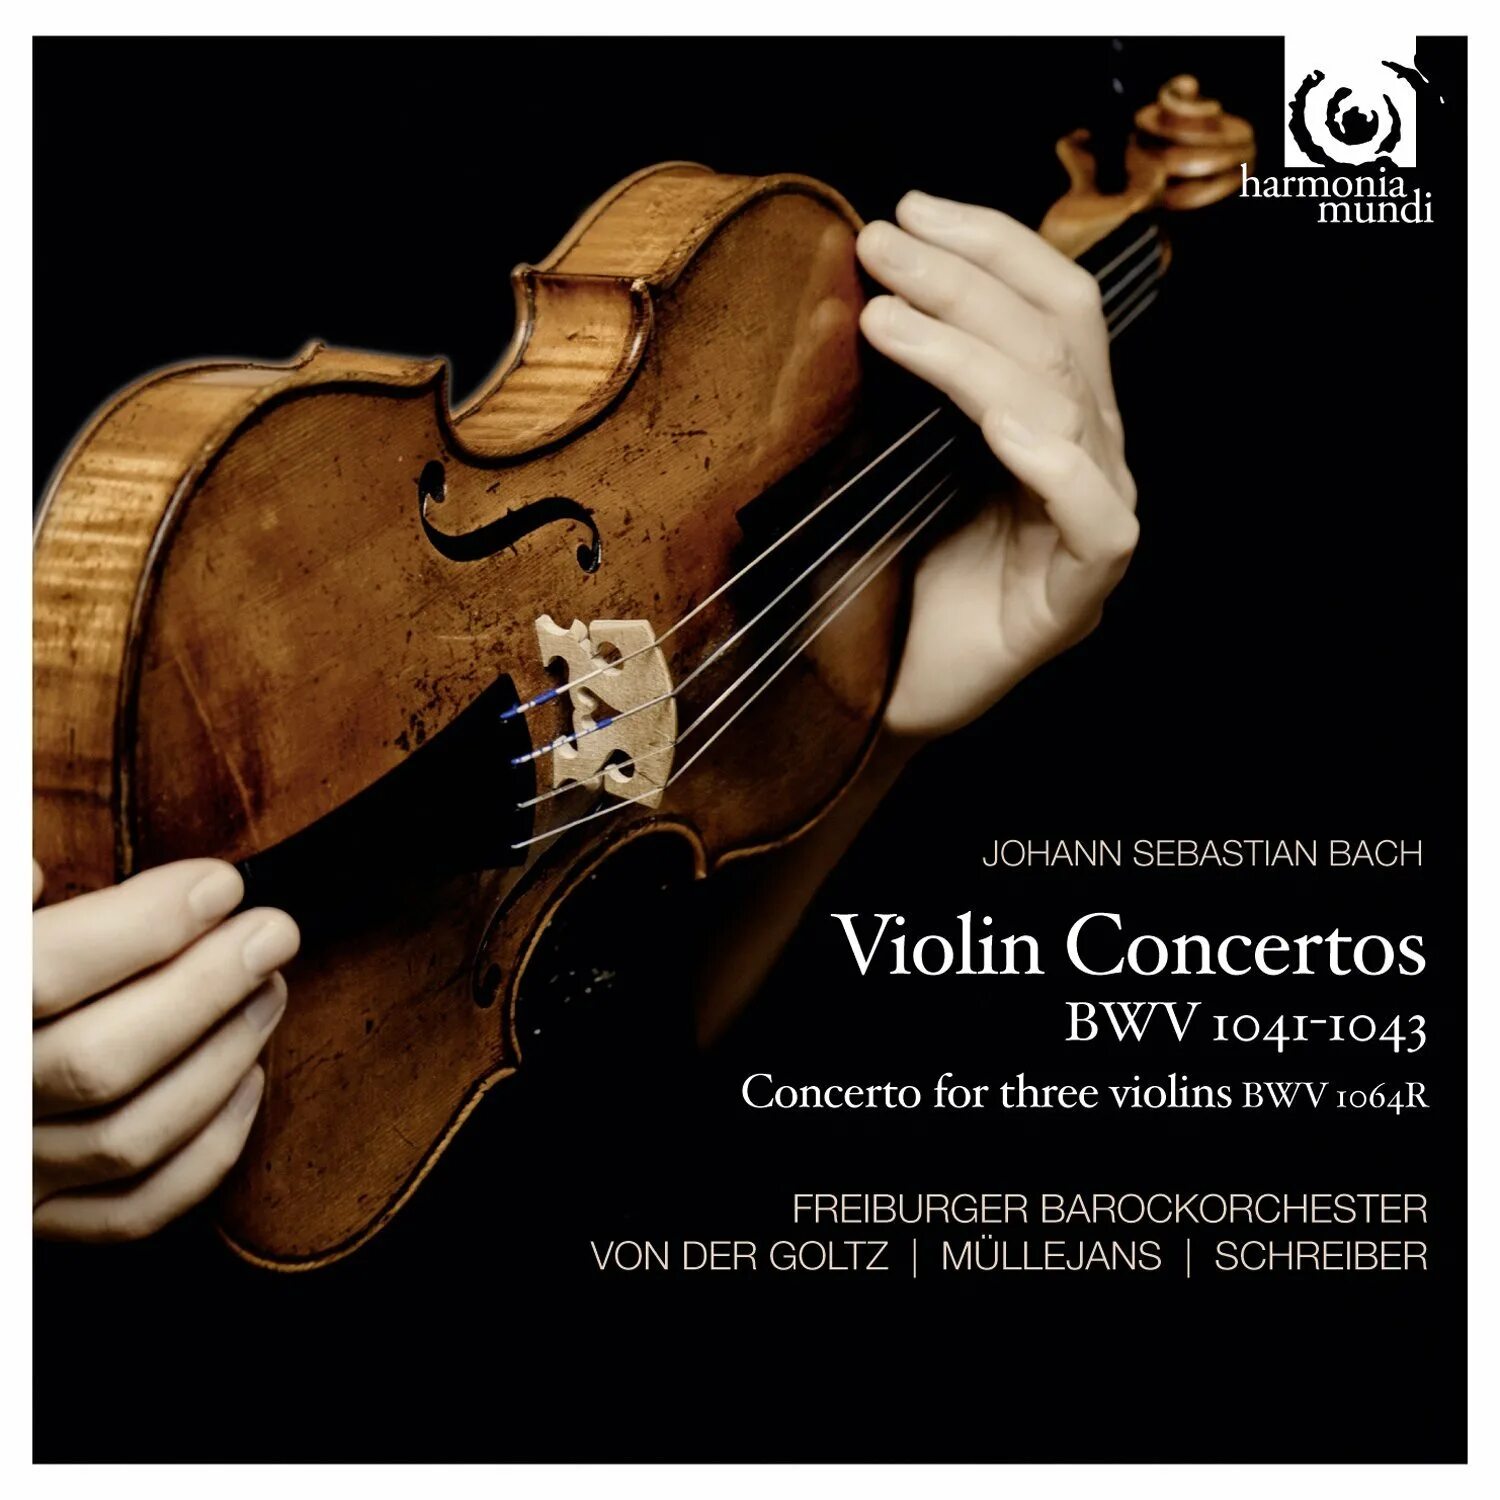 Violin Concertos. Bach Violin Concertos. Скрипка Баха. Бах со скрипкой. Bach violin